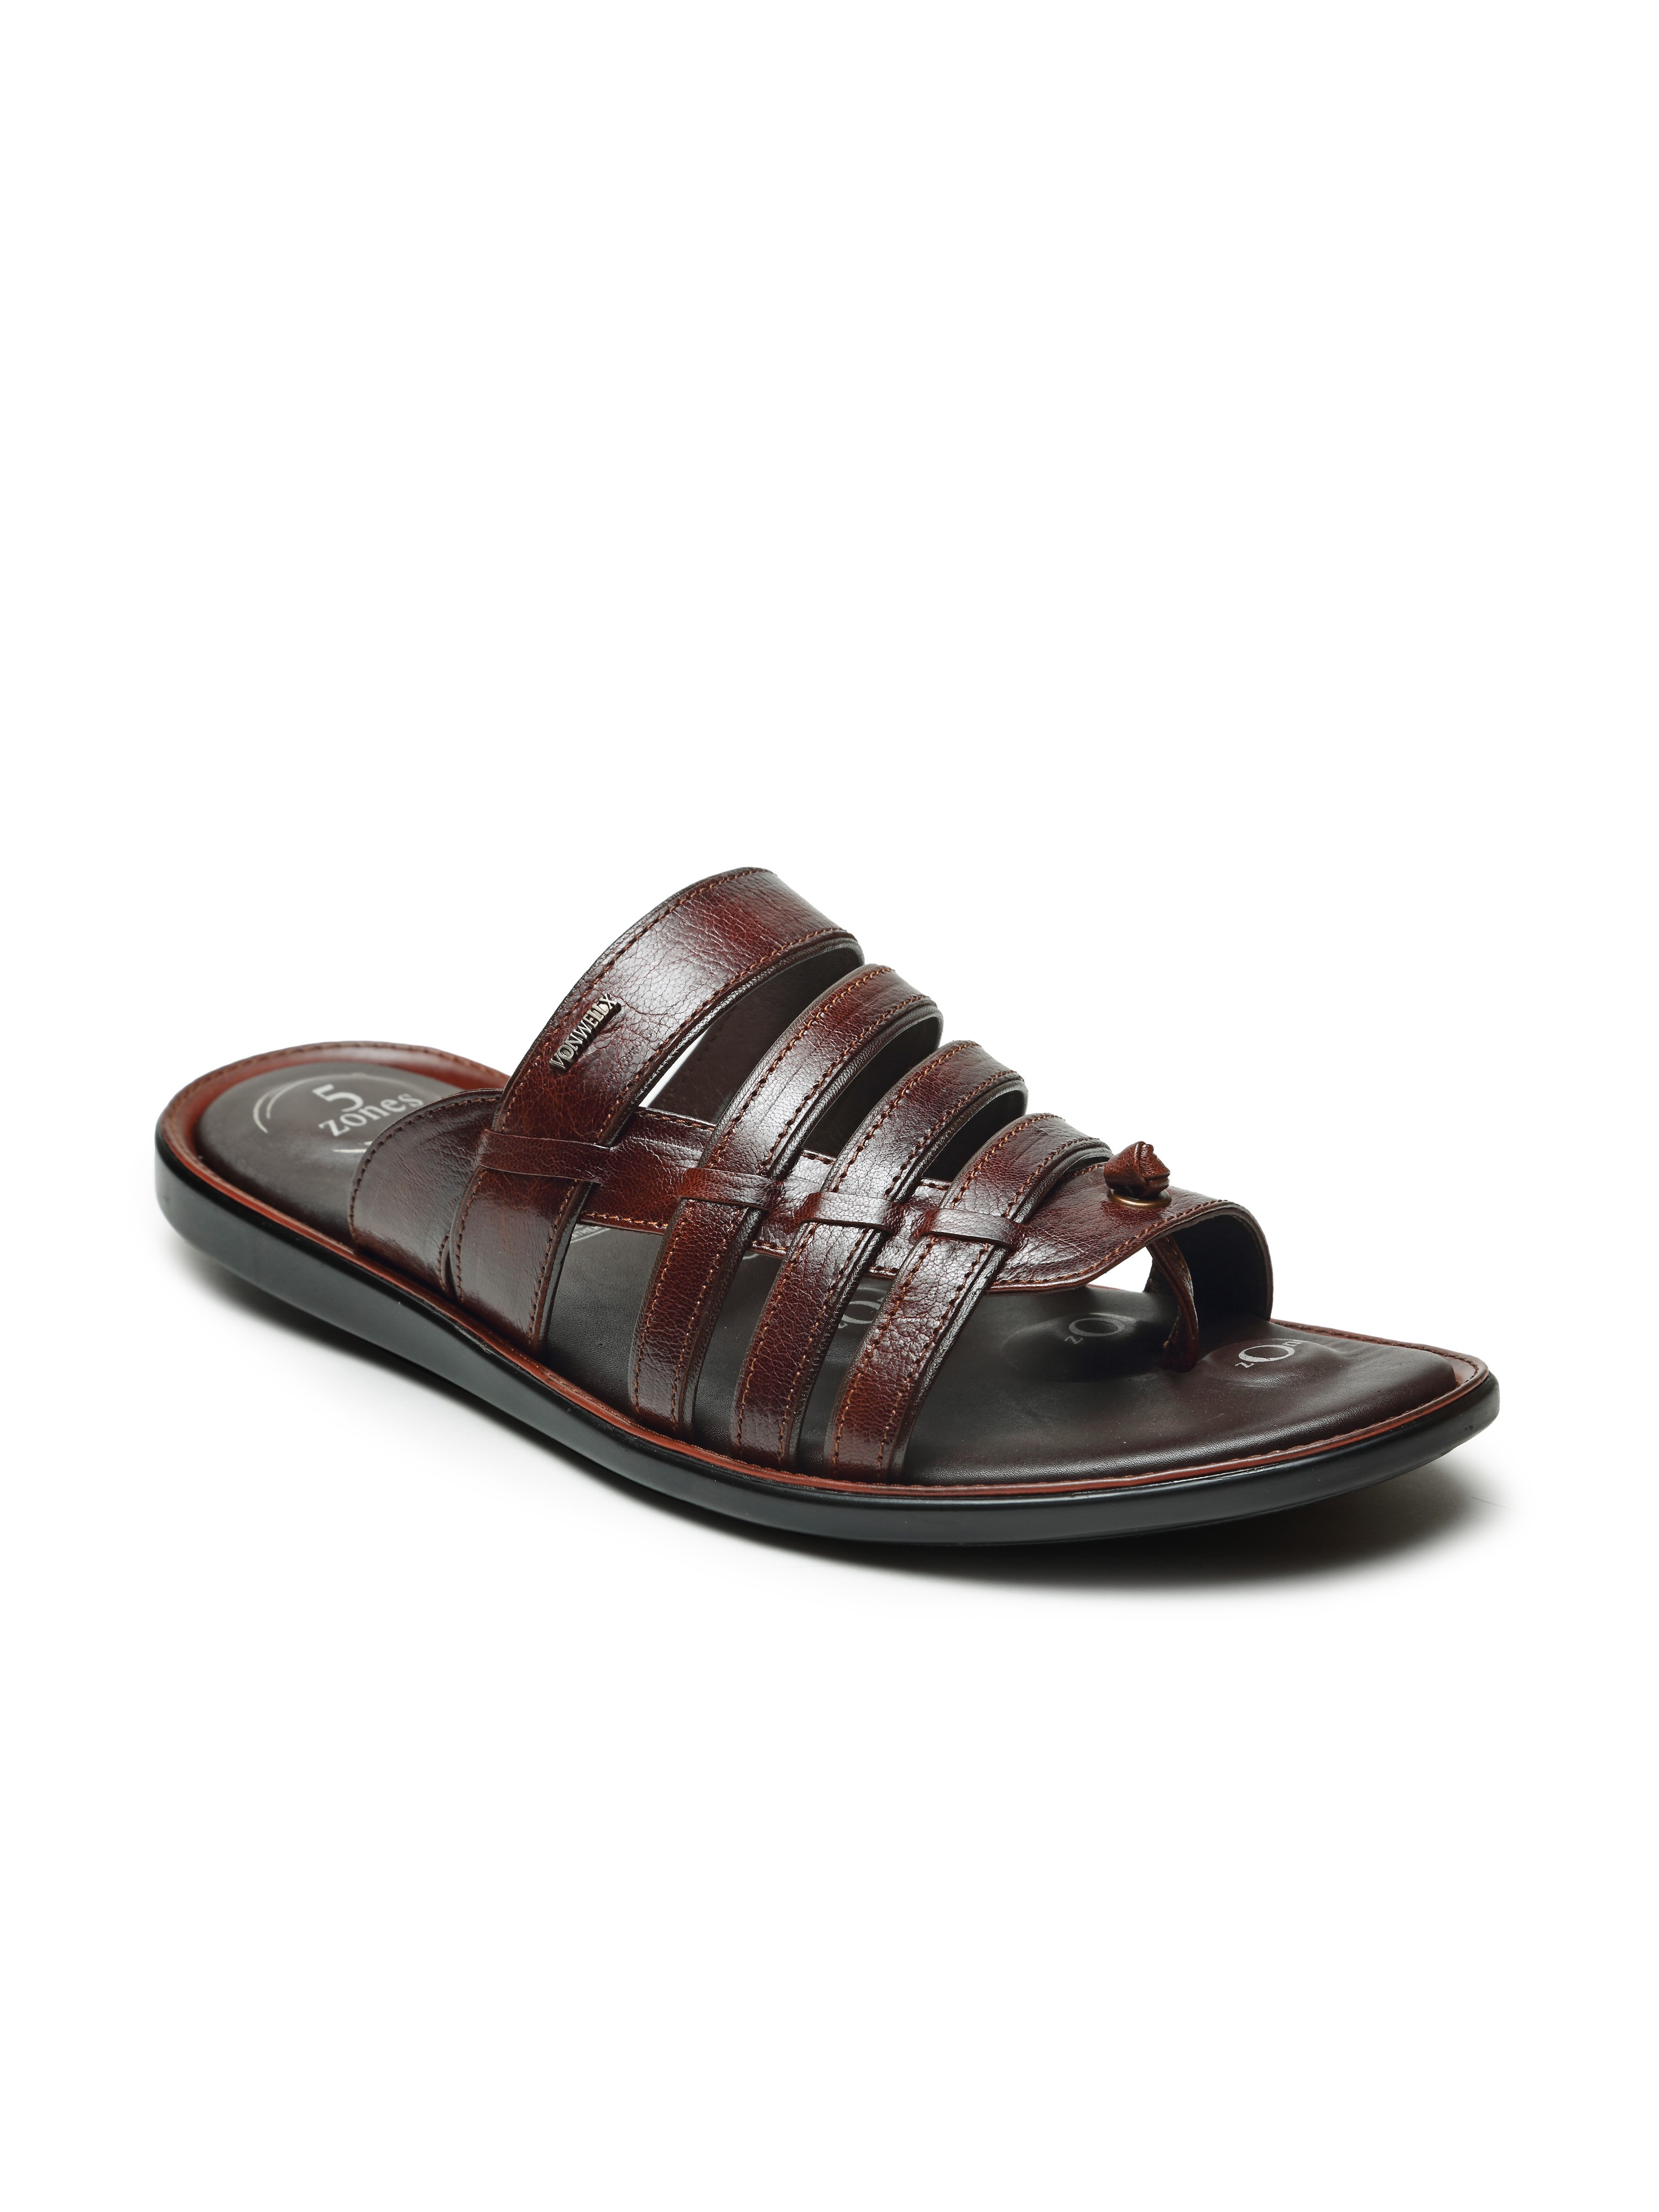 Buy Von Wellx Germany Comfort Men's Tan Slippers Harlan Online in Jeddah